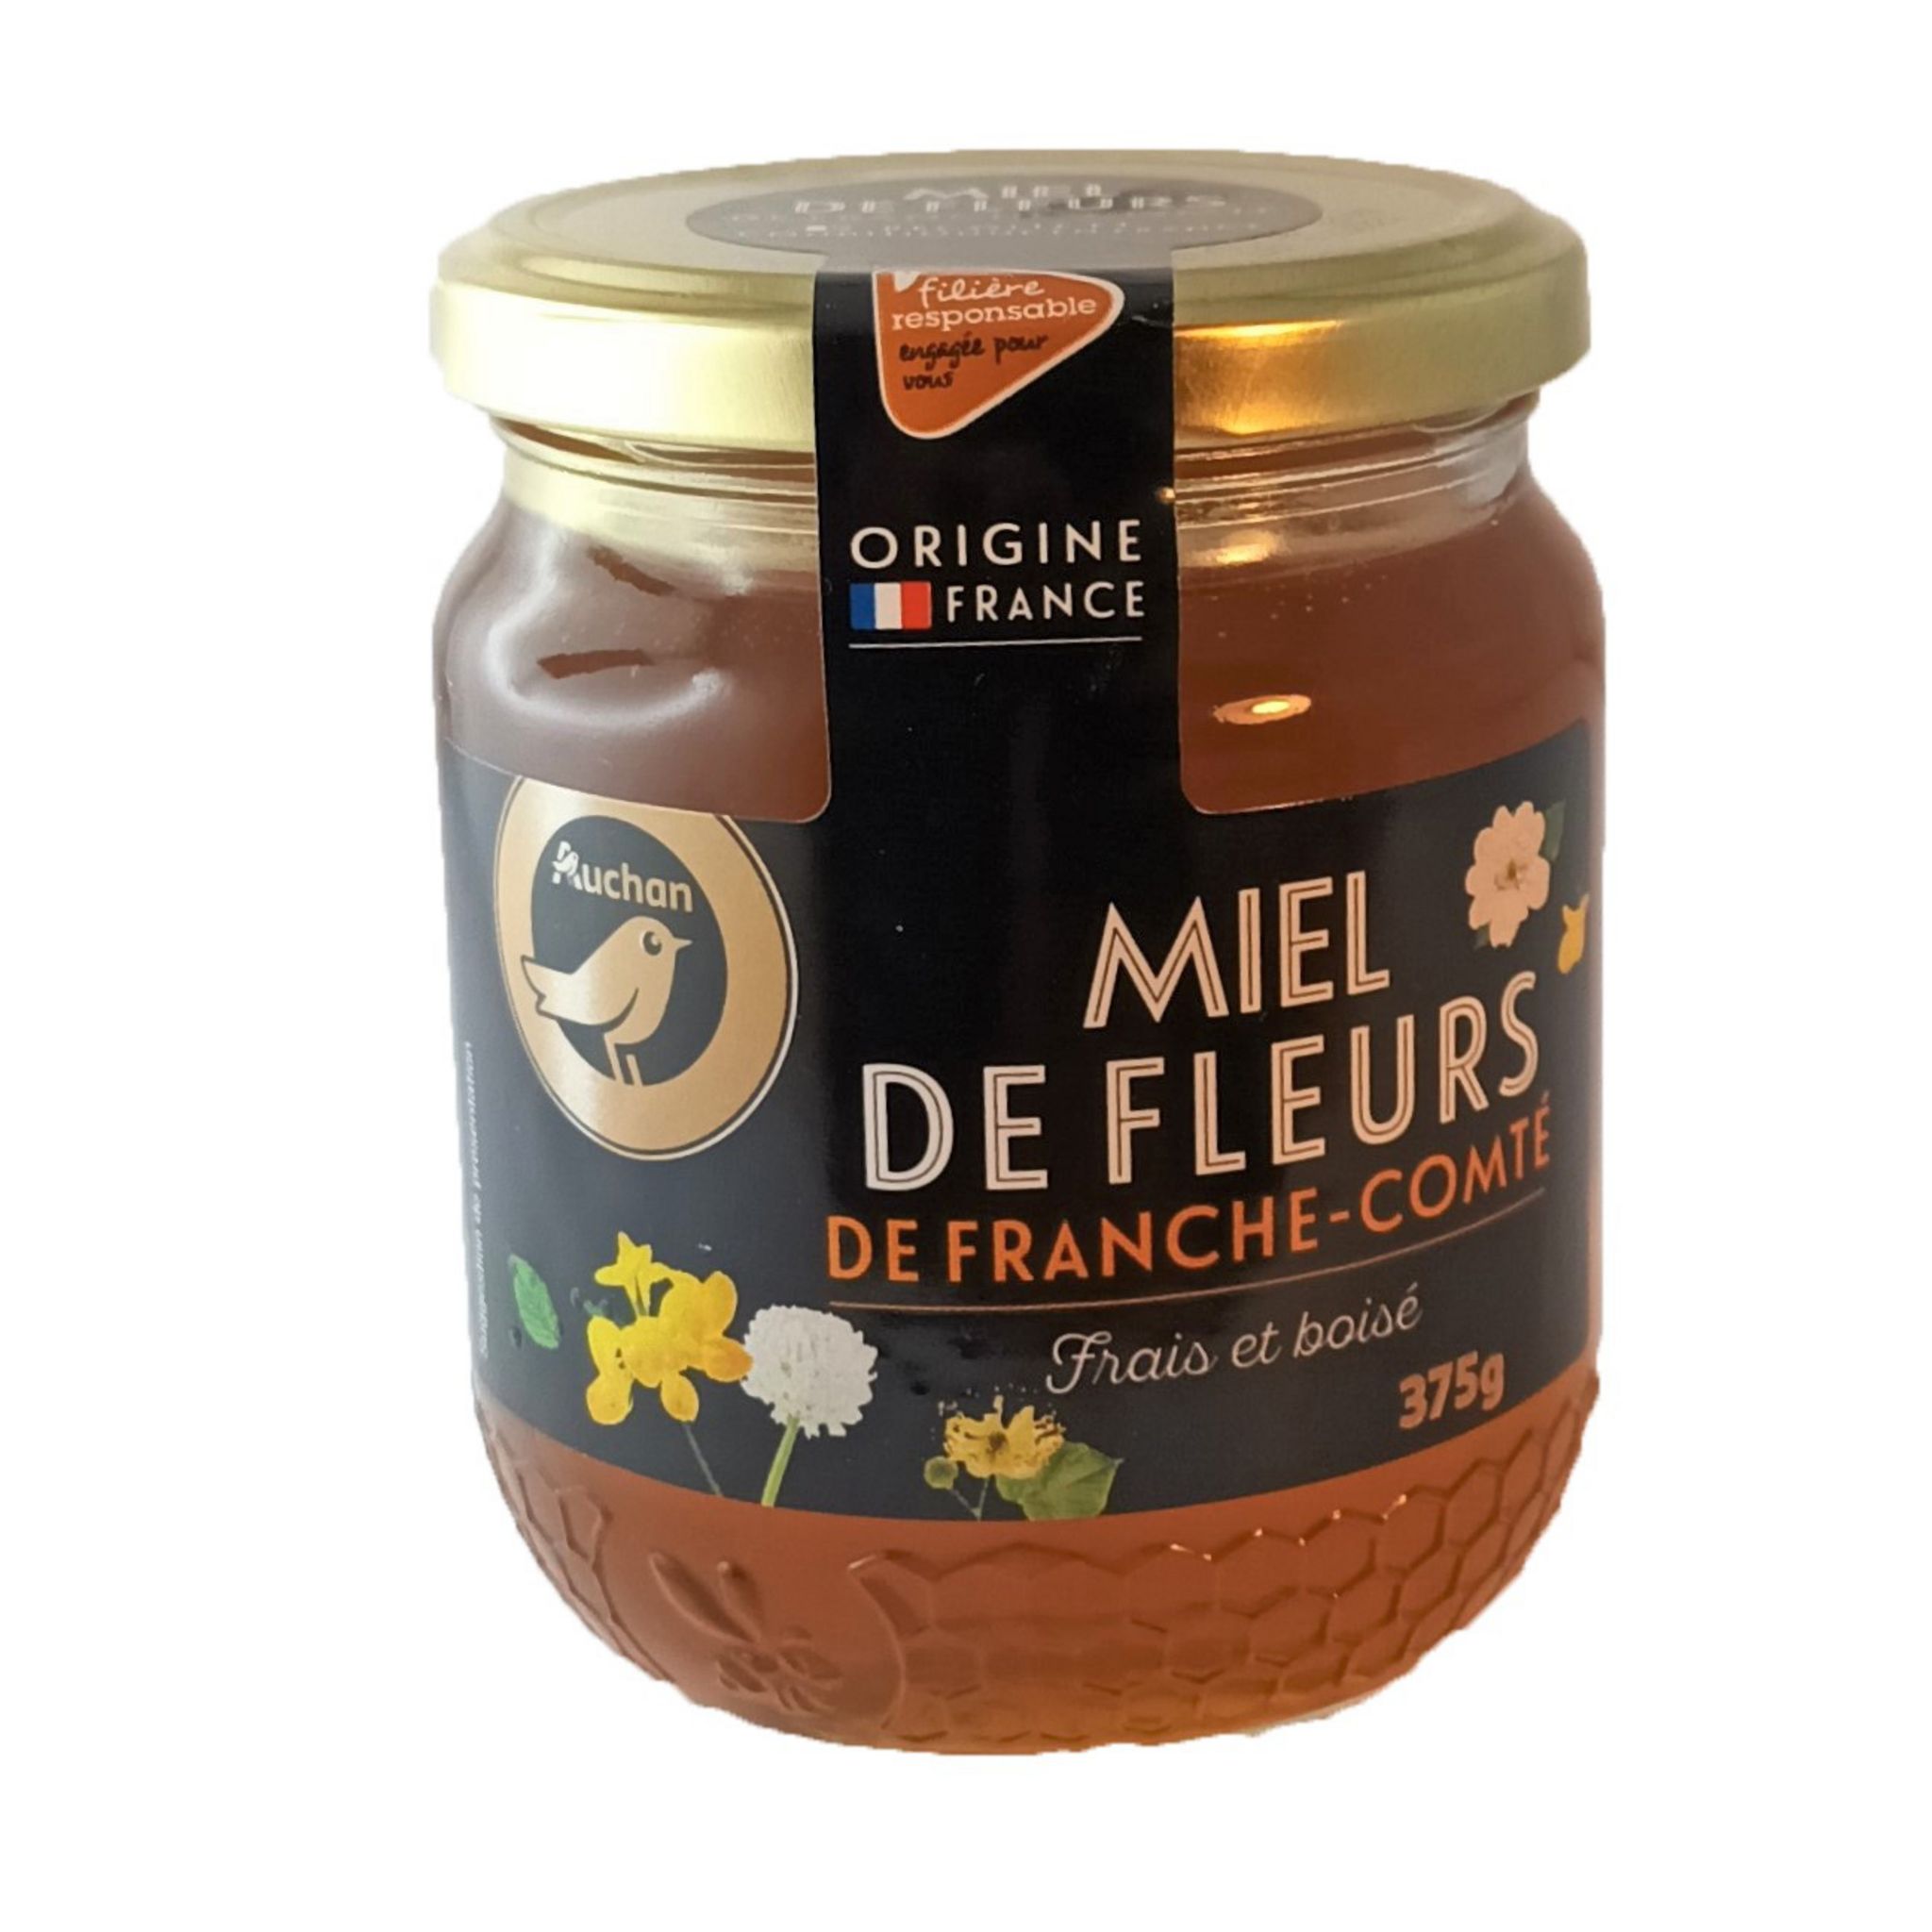 Miel liquide de fleurs sauvages de France- 500g - Auchan - 0.5 kg